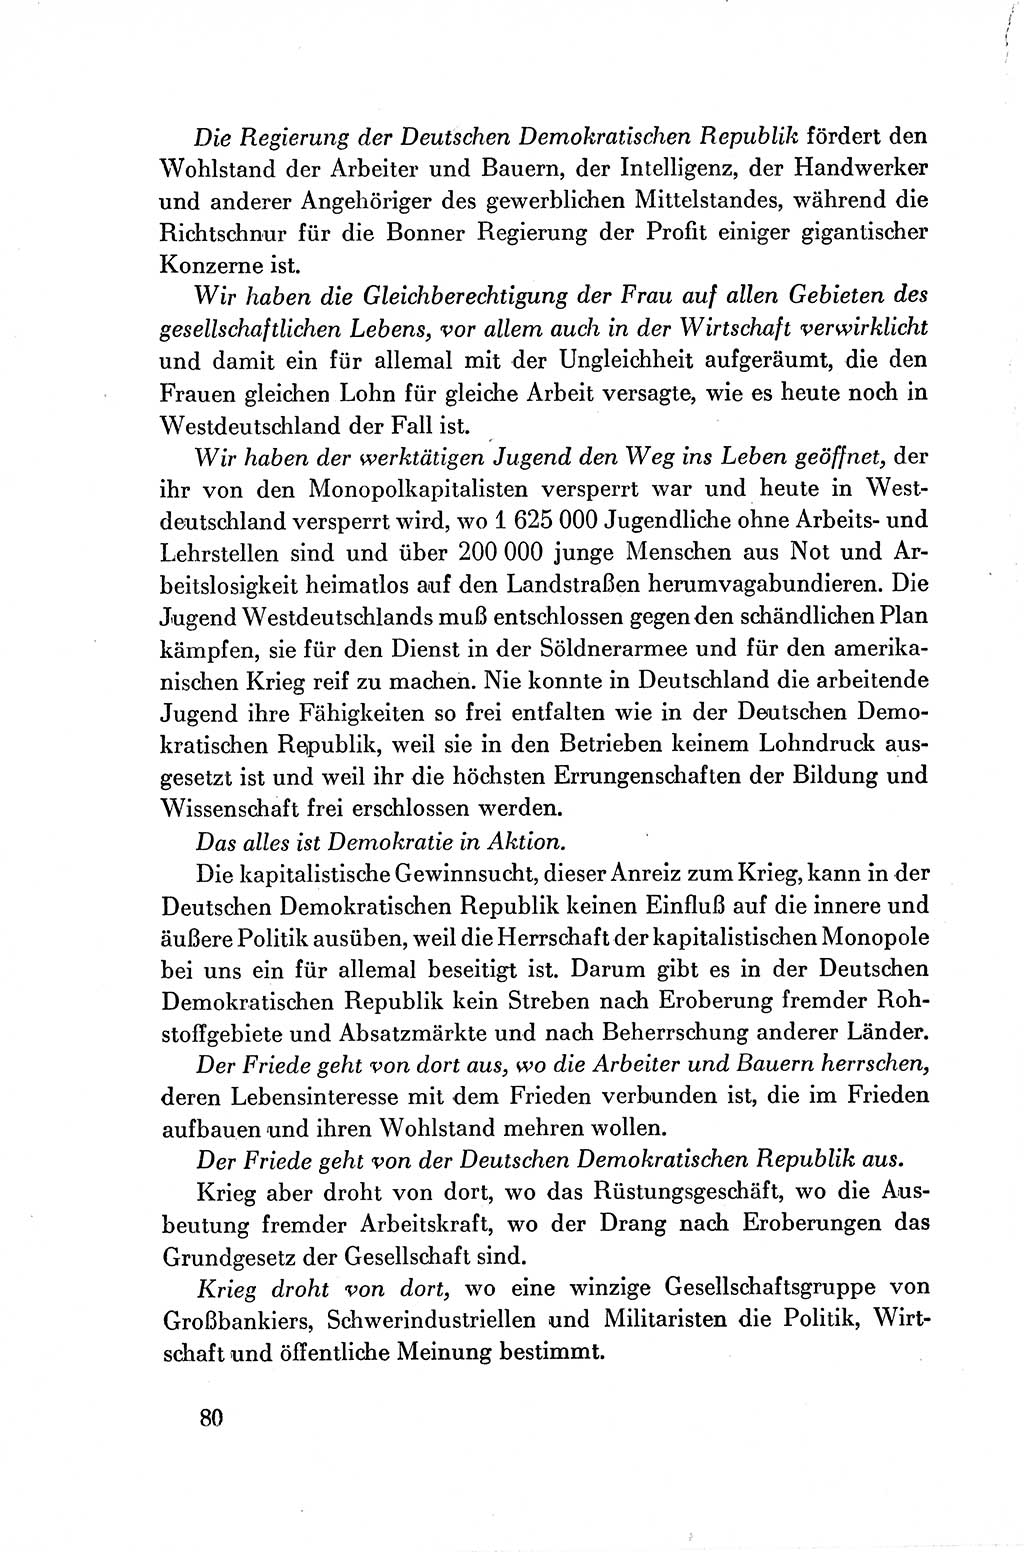 Dokumente der Sozialistischen Einheitspartei Deutschlands (SED) [Deutsche Demokratische Republik (DDR)] 1954-1955, Seite 80 (Dok. SED DDR 1954-1955, S. 80)